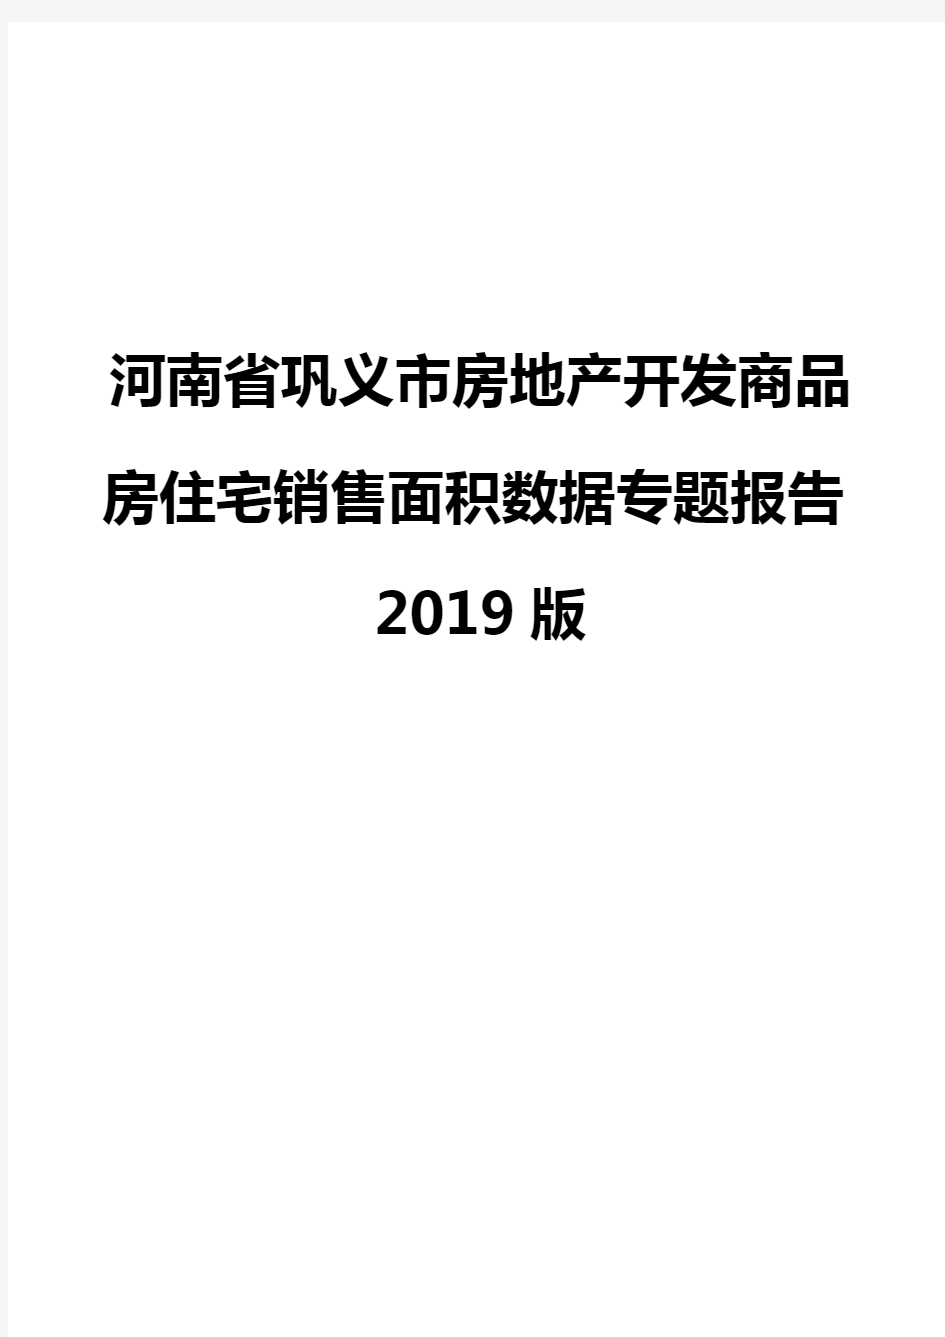 河南省巩义市房地产开发商品房住宅销售面积数据专题报告2019版